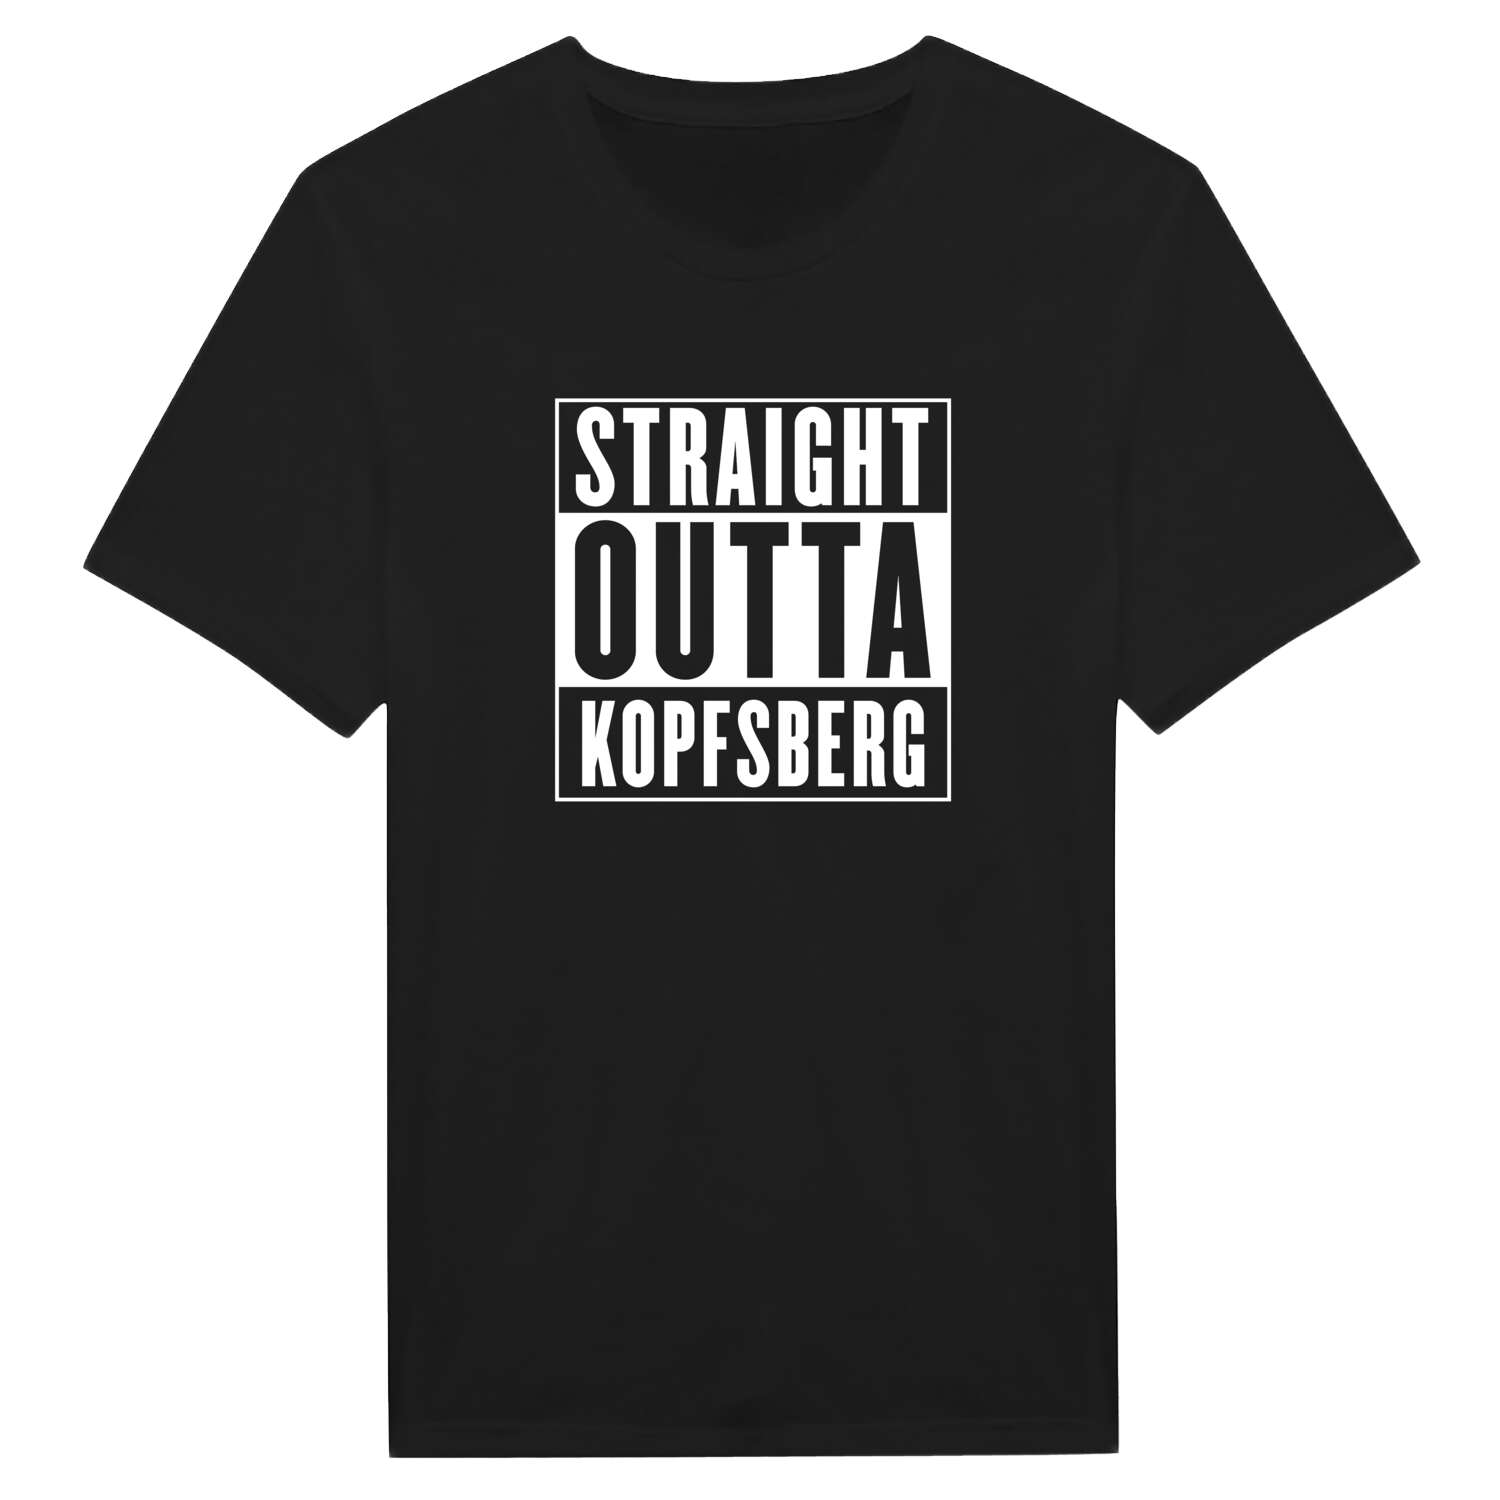 Kopfsberg T-Shirt »Straight Outta«